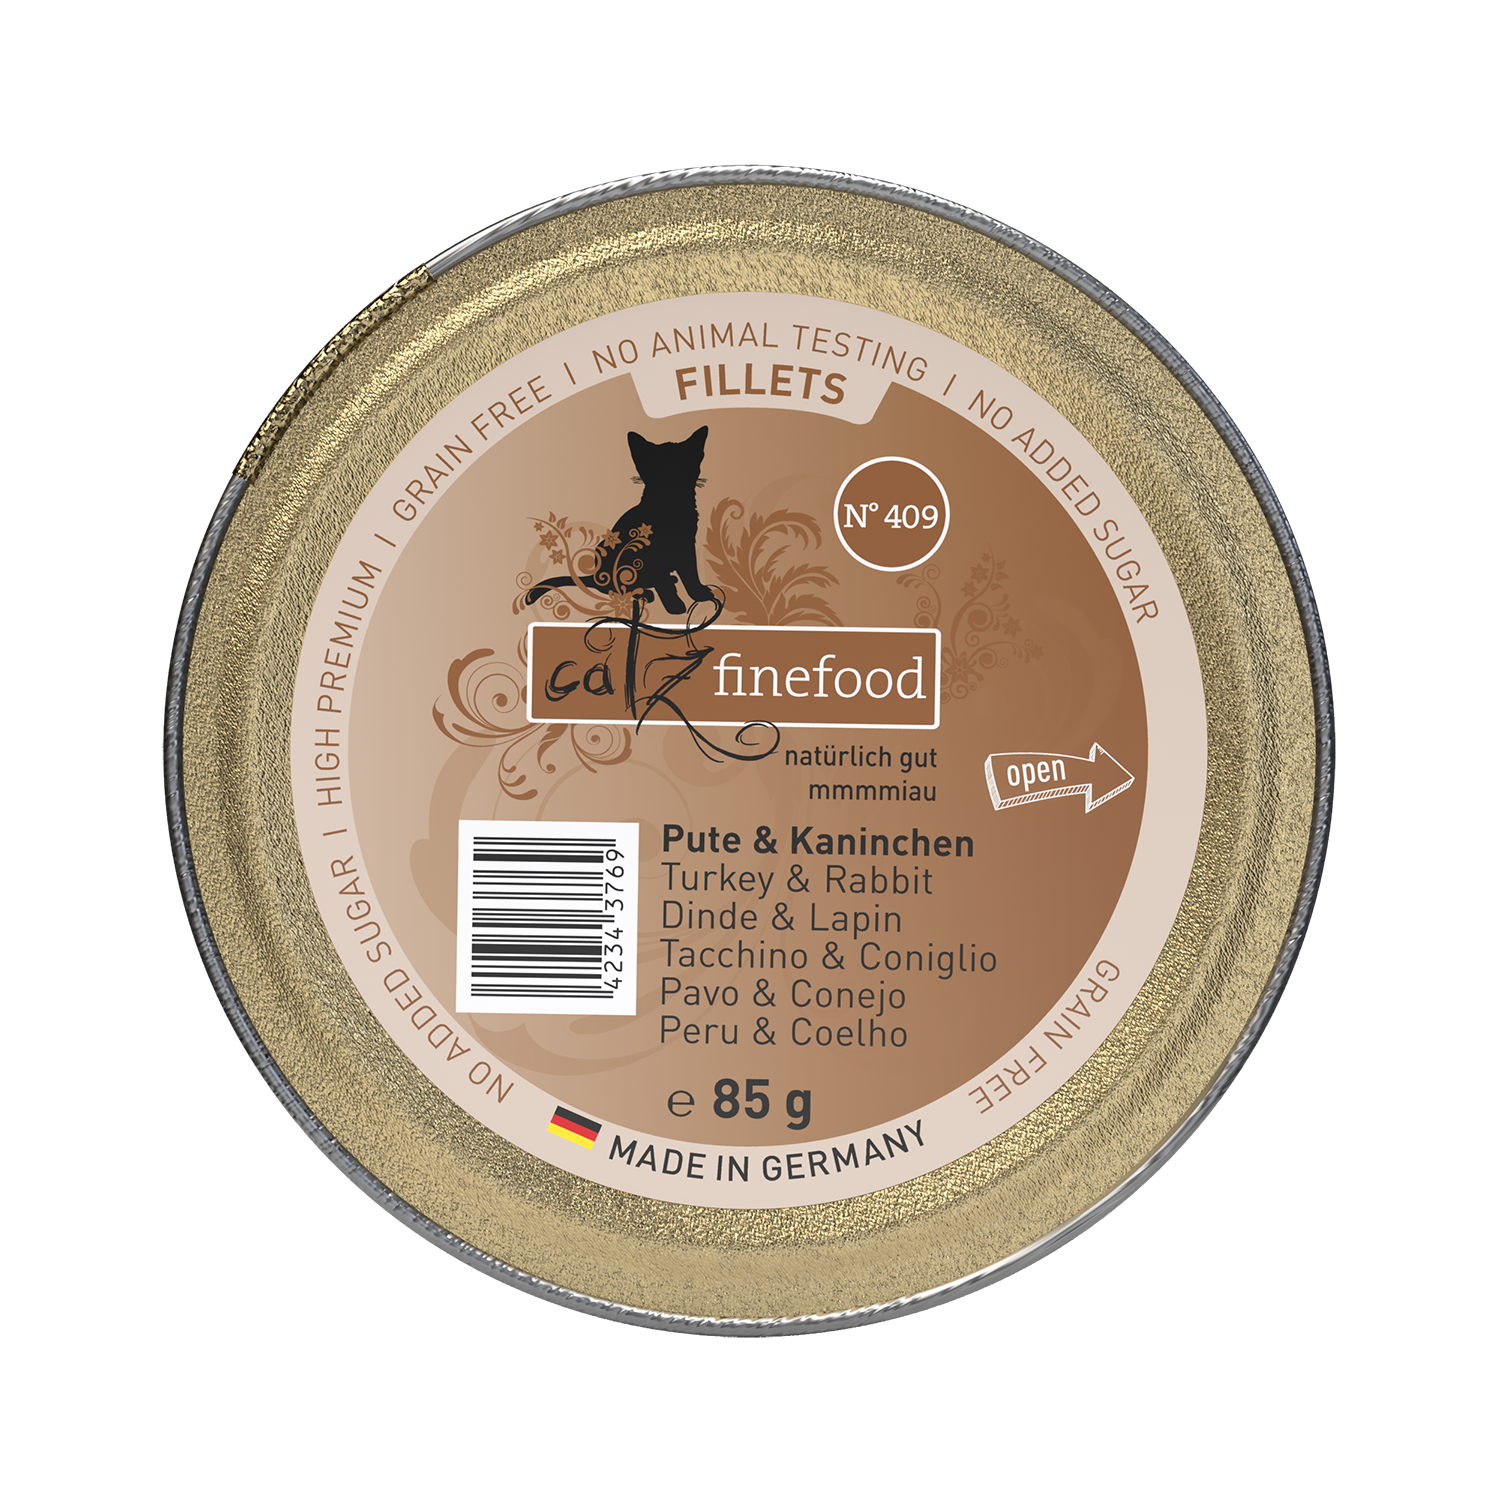 catz finefood Fillets N°409 - Pute & Kaninchen in Jelly